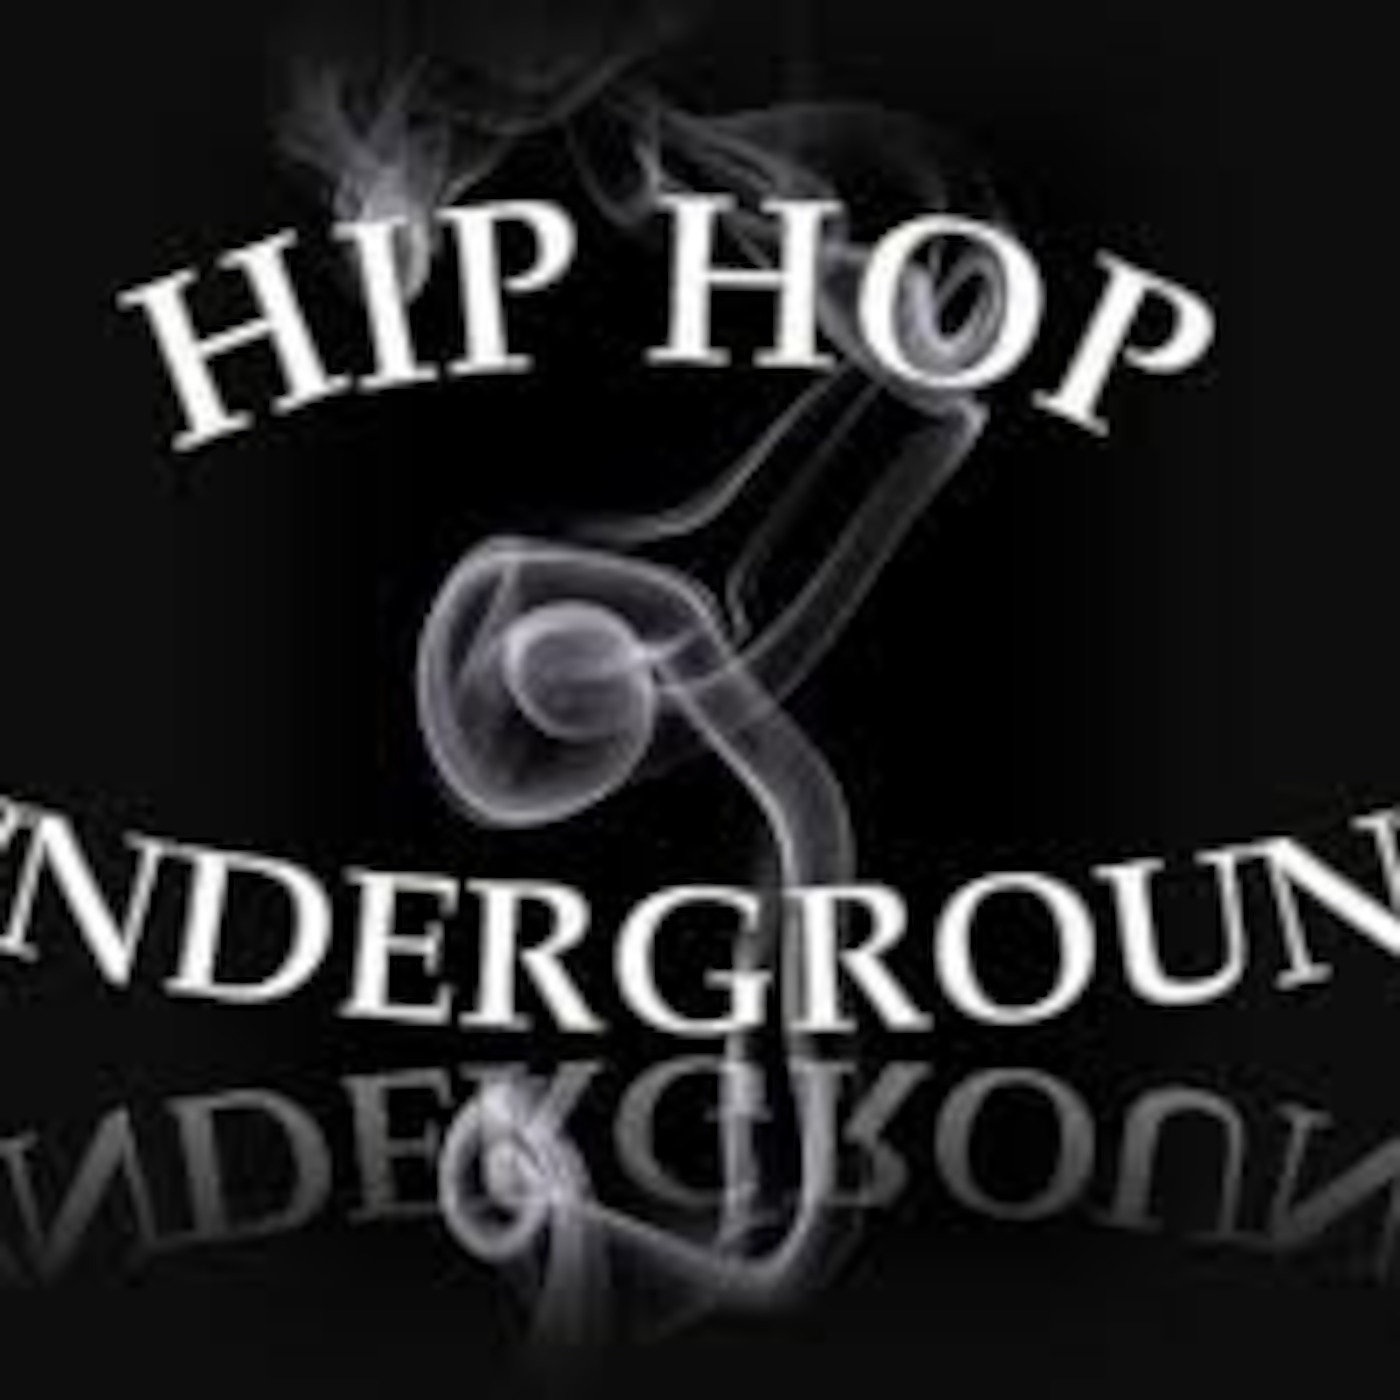 Underground Breakdance Vol. 3